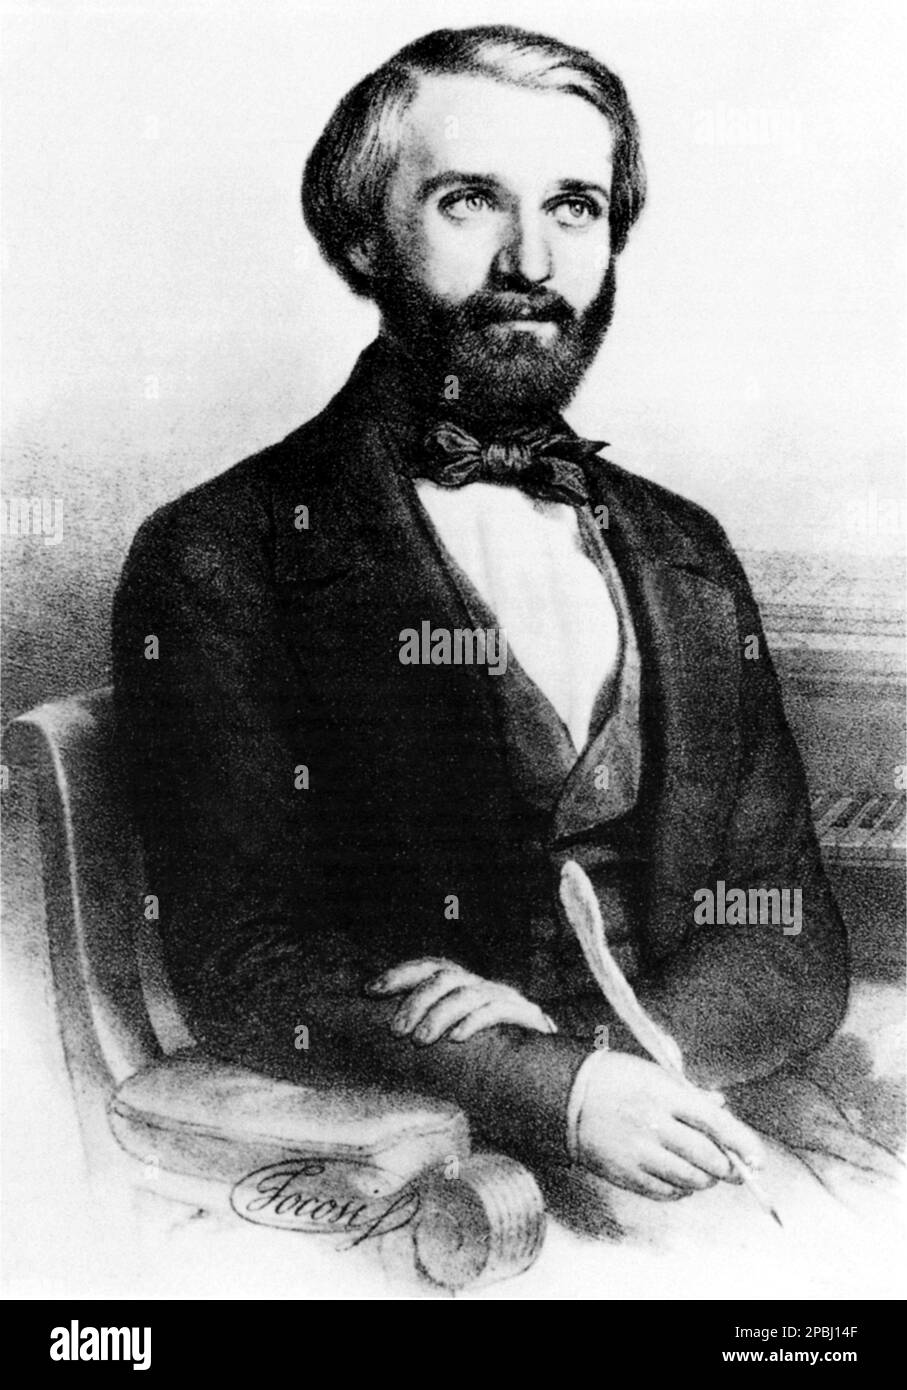 Il celebre compositore musicale italiano GIUSEPPE VERDI ( 1813 - 1901 ) , Incisione dell'artista italiano ROBERTO FOCOSI .- COMPOSITORE - OPERA LIRICA - CLASSICA - CLASSICA - RITRATTO - ritratto - MUSICA - MUSICA - BARBA - BARBA - BARBA - FIOCCO - FIOCCO - CRAVATTA - CRAVATTA - incisione - penna - piuma - piuma --- ARCHIVIO GBB Foto Stock